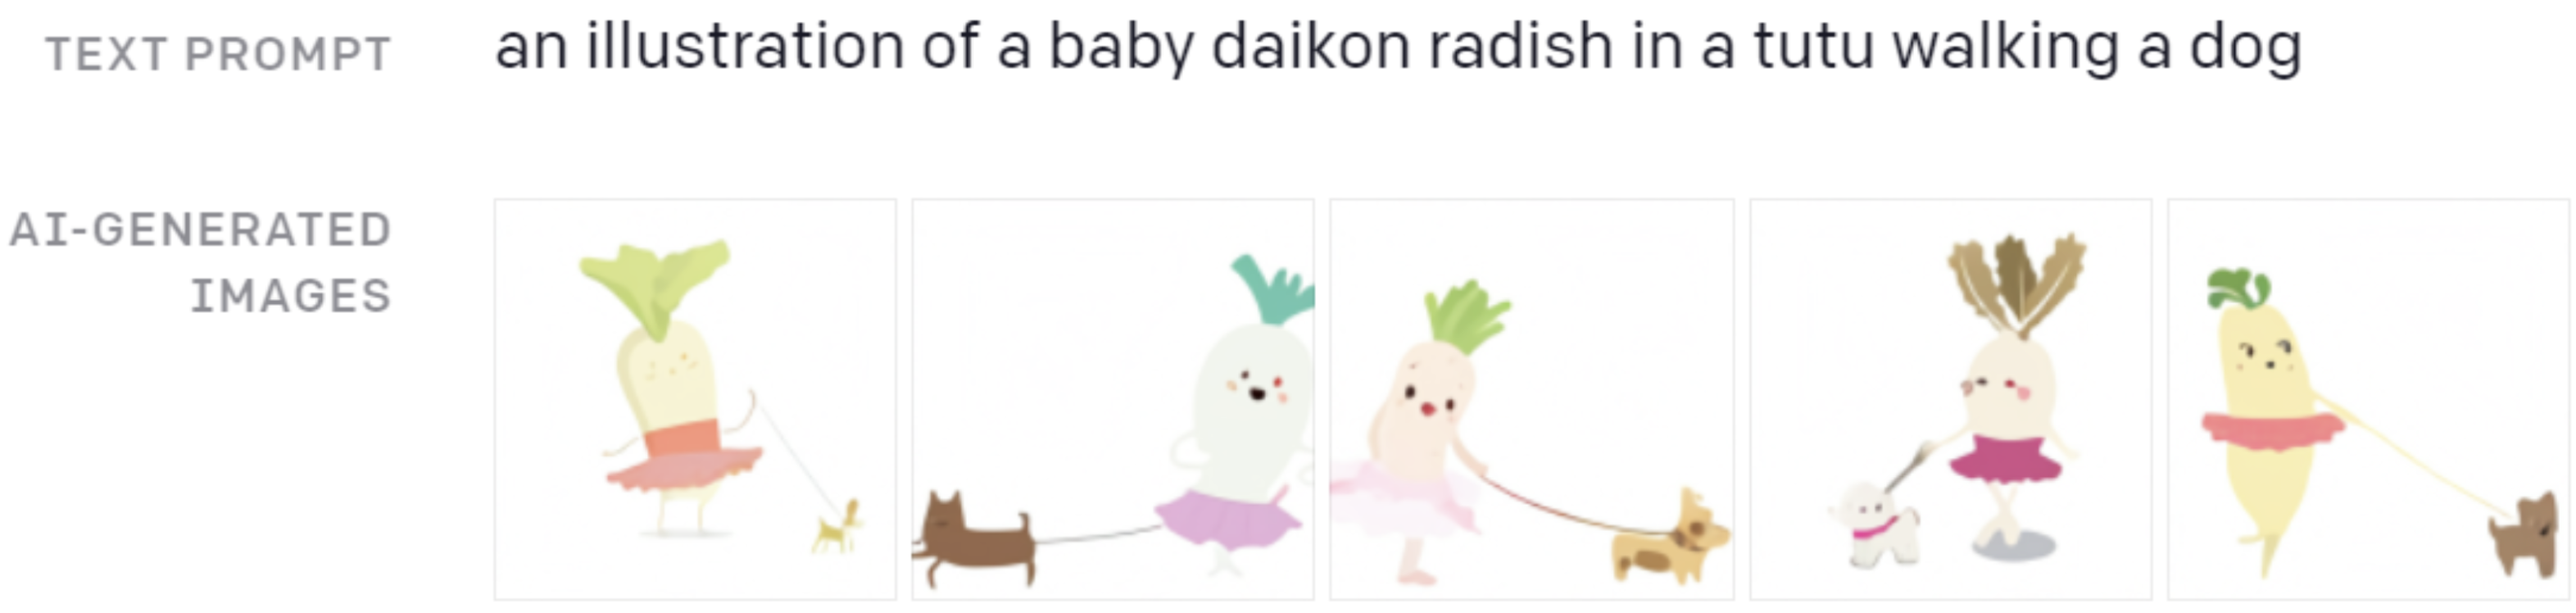 Hình 1: minh họa của một bé củ cải daikon trong bộ váy tutu đang dắt chó đi dạo